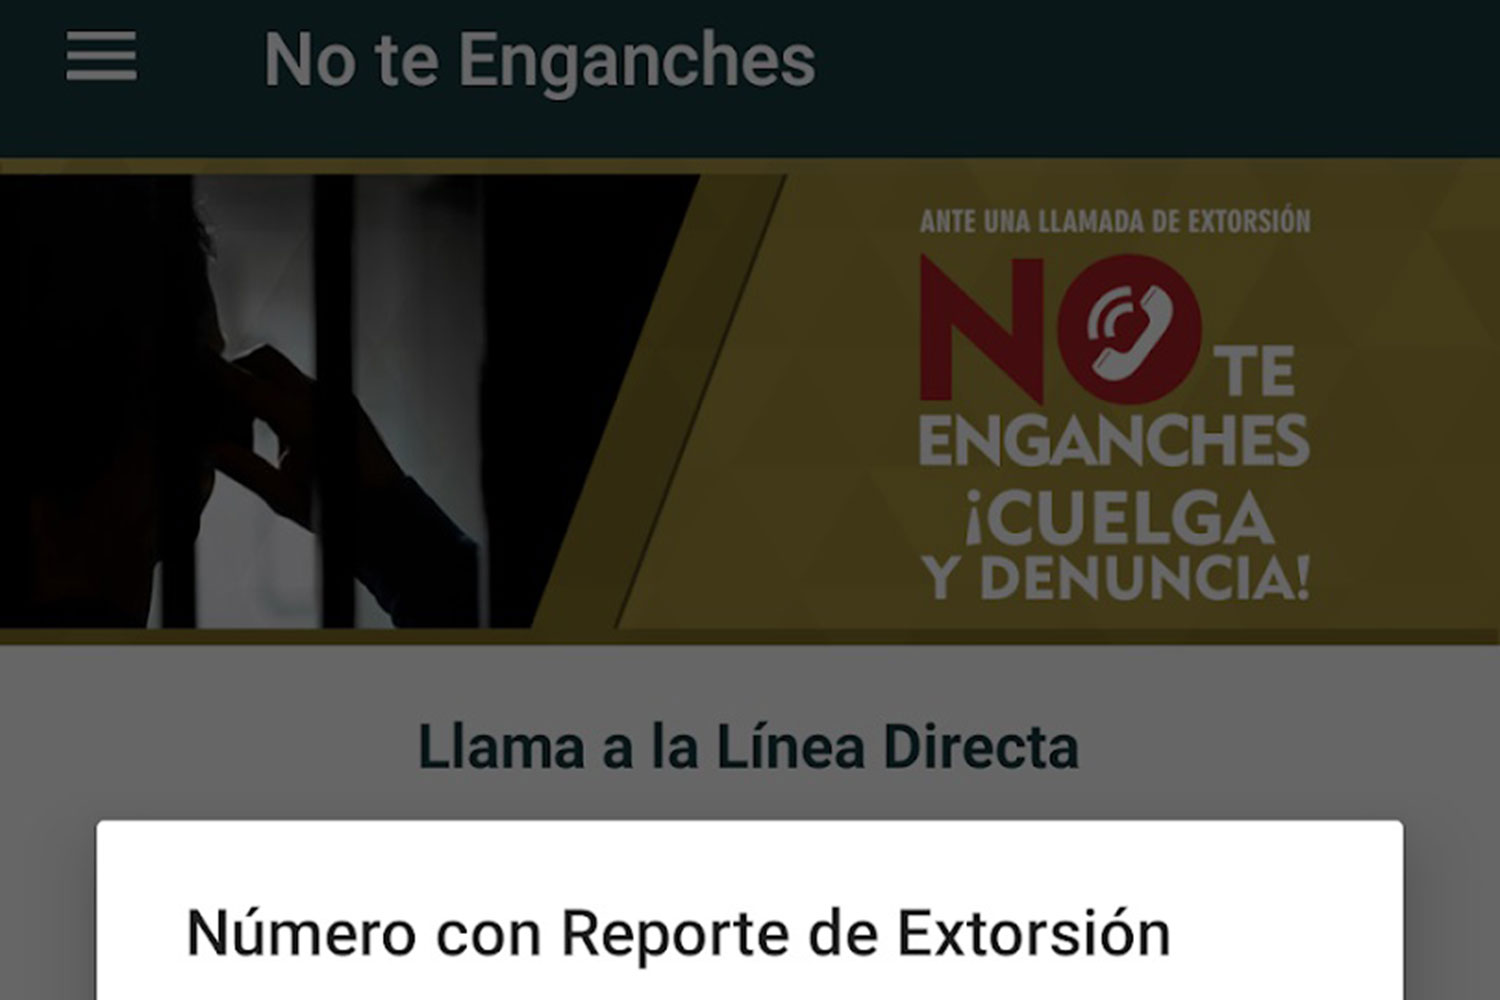 aplicación No Te Enganches para prevenir la extorsión telefónica en Chiapas